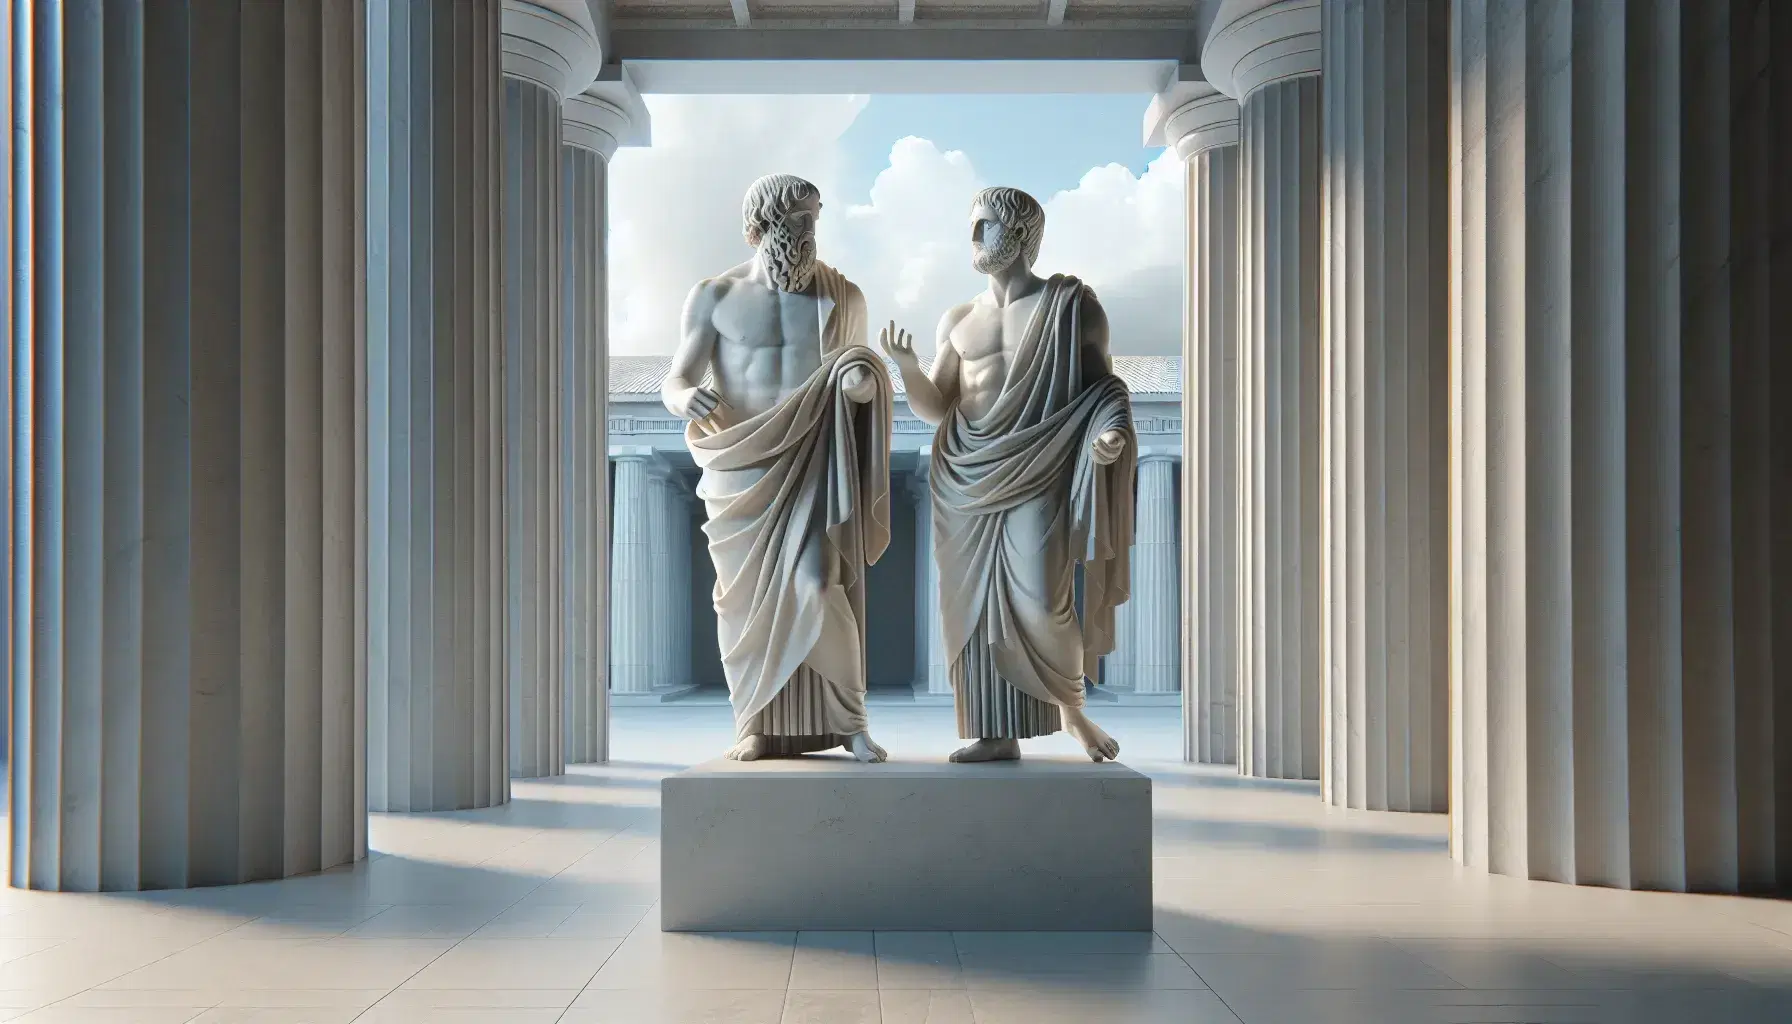 Statua in marmo bianco di Platone e Aristotele in dialogo, con mani gestuali e toghe, su piedistallo, tra colonne doriche sotto cielo azzurro.